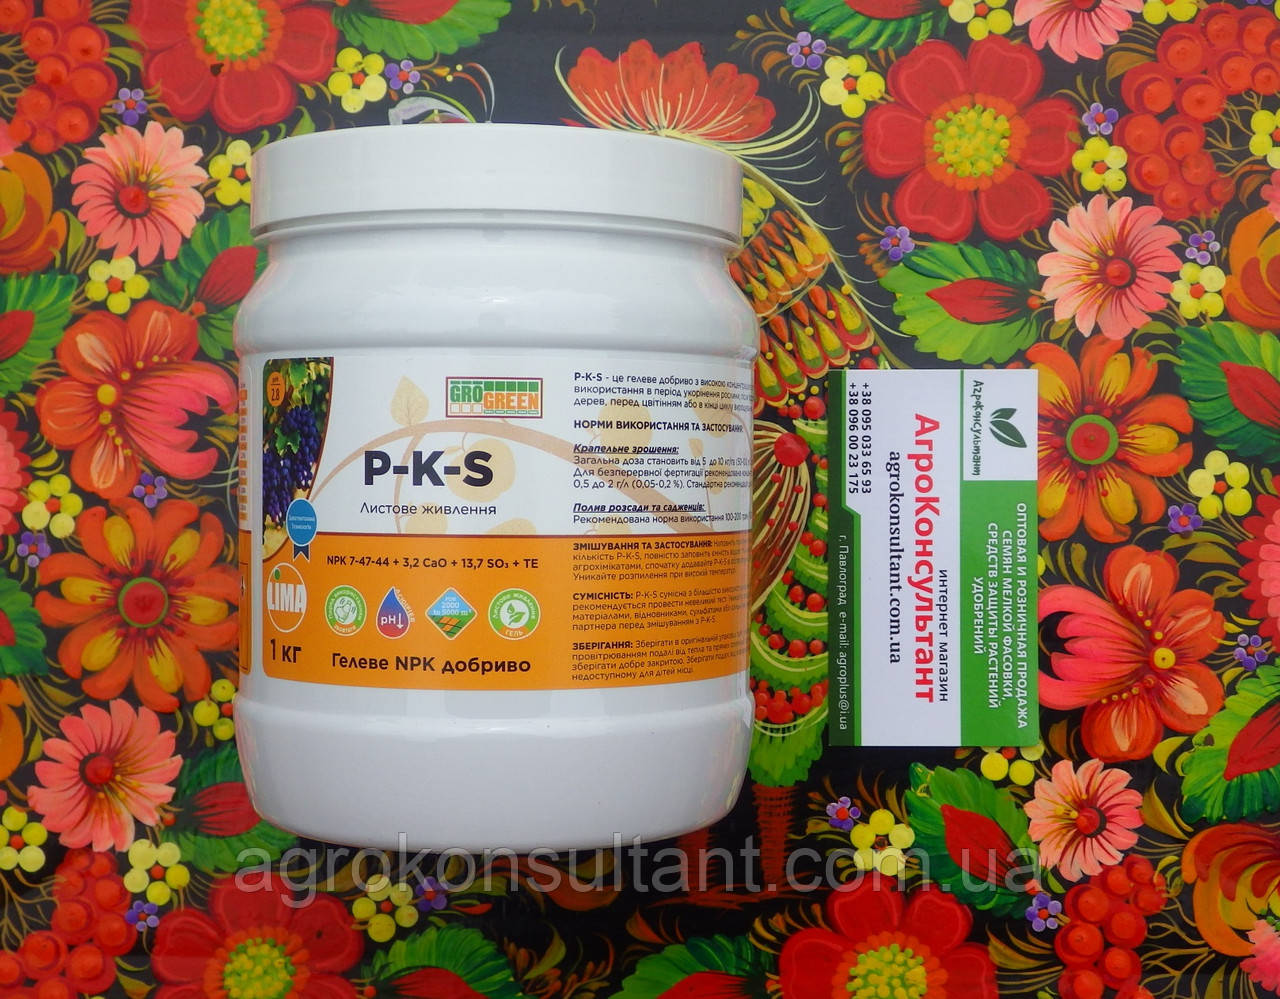 P-K-S (ПКС), NPK 7.47.44 (Грогрін), 1 кг — гелеве добриво з високою концентрацією фосфору, калію та сірки